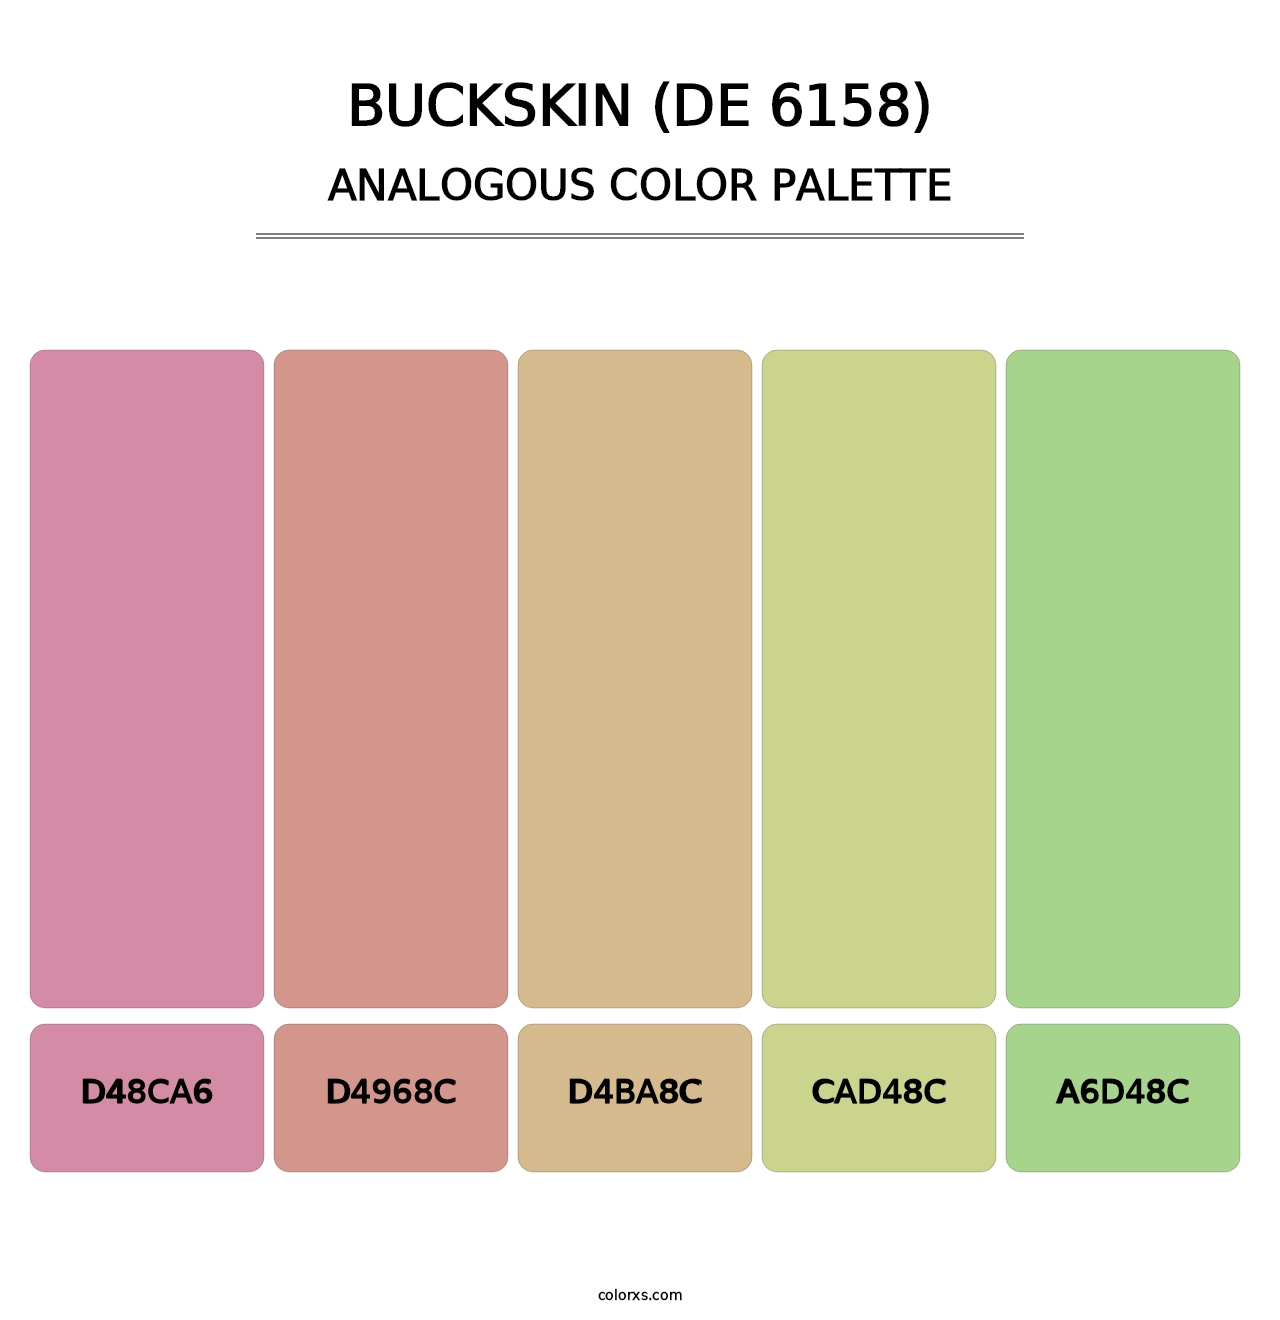 Buckskin (DE 6158) - Analogous Color Palette